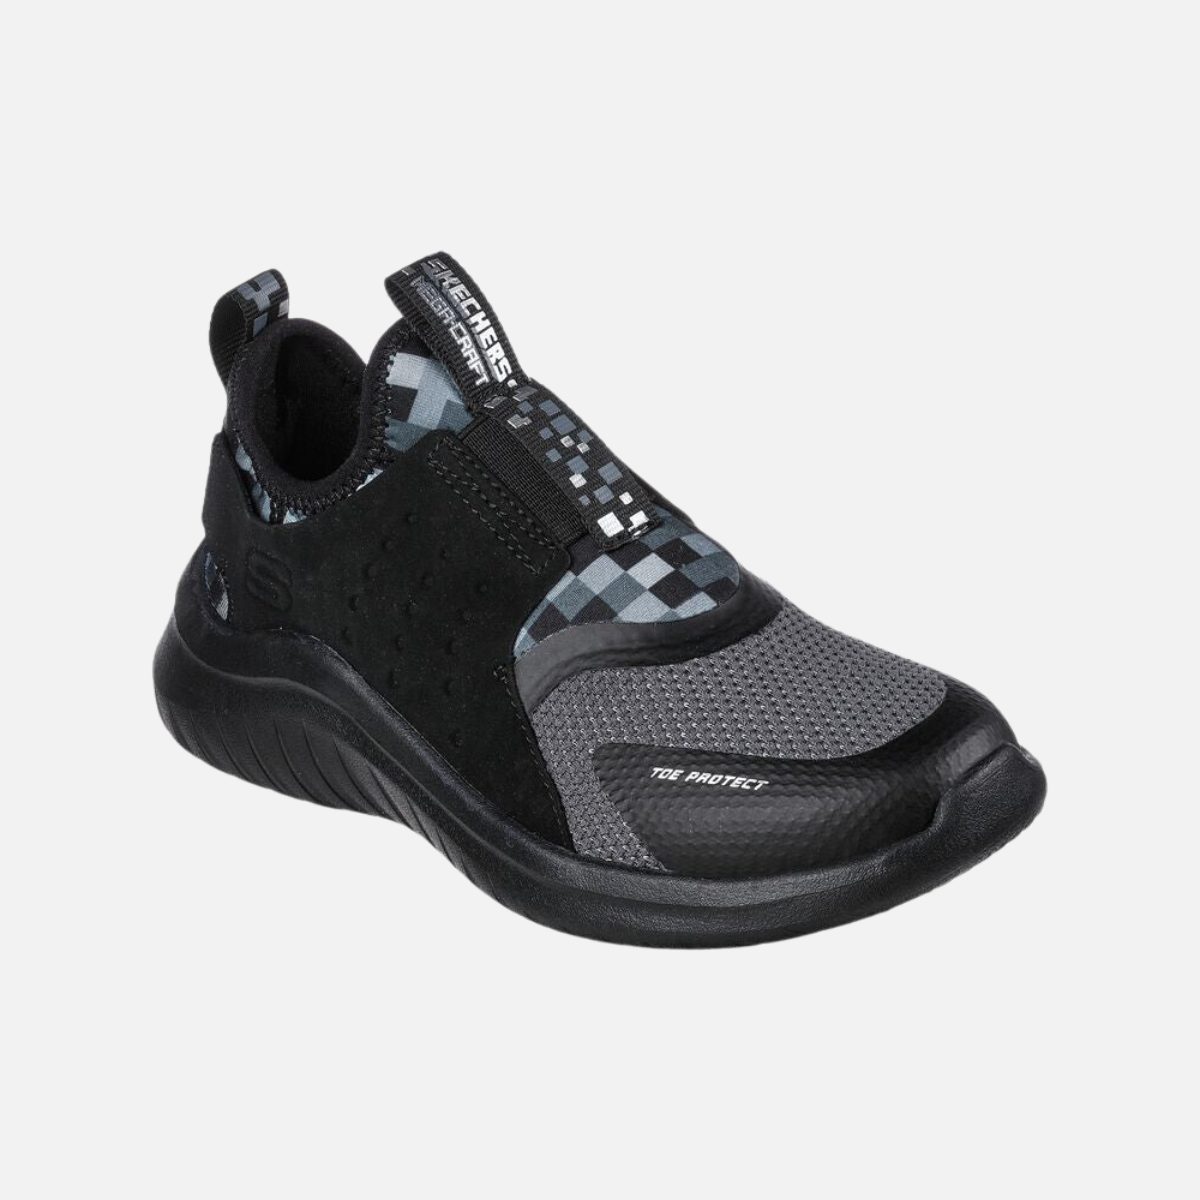 Skechers Ultra Flex 2.0 Kids Shoes (8-13 Year)- Black